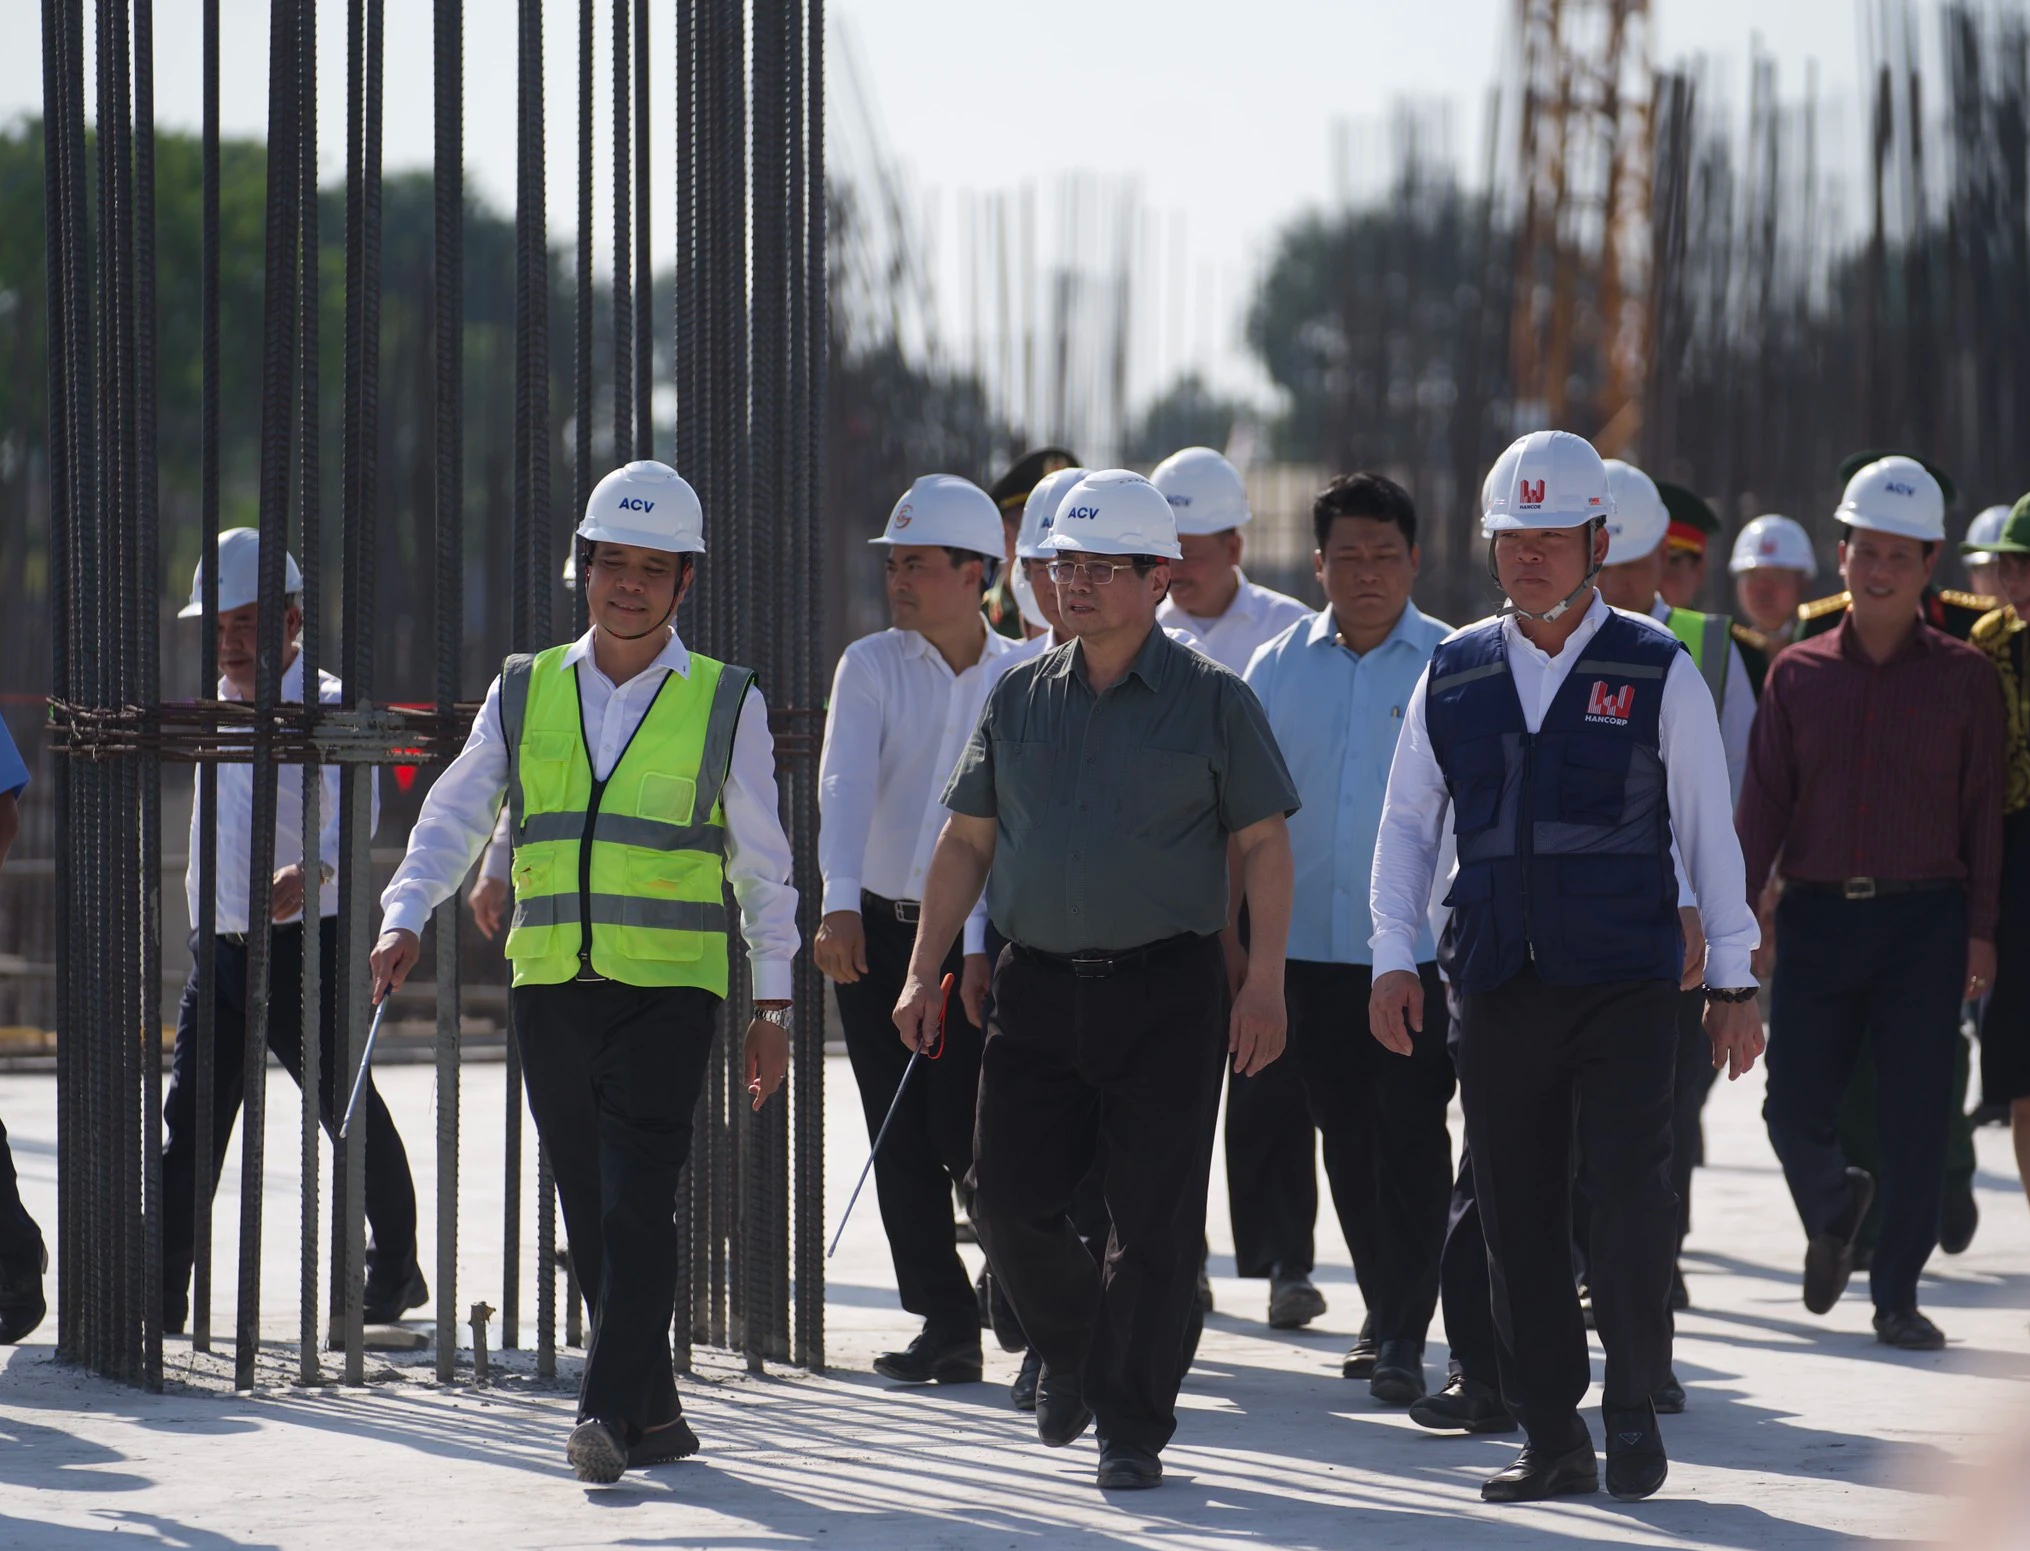 Thủ tướng: Nỗ lực hoàn thành nhà ga T3 sân bay Tân Sơn Nhất vào 30/4/2025- Ảnh 1.